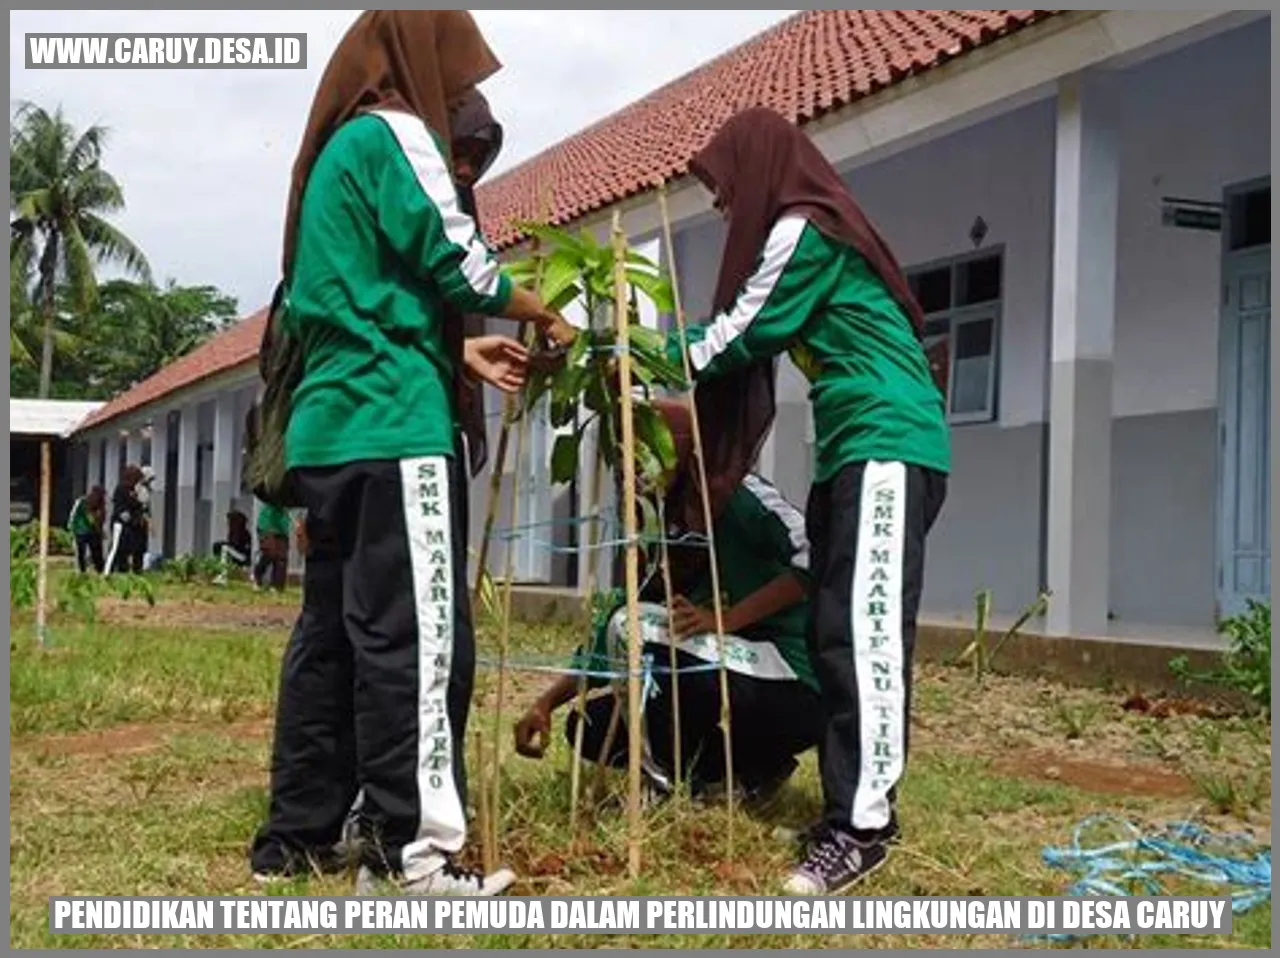 Gambar Pendidikan tentang Peran Pemuda dalam Perlindungan Lingkungan di Desa caruy